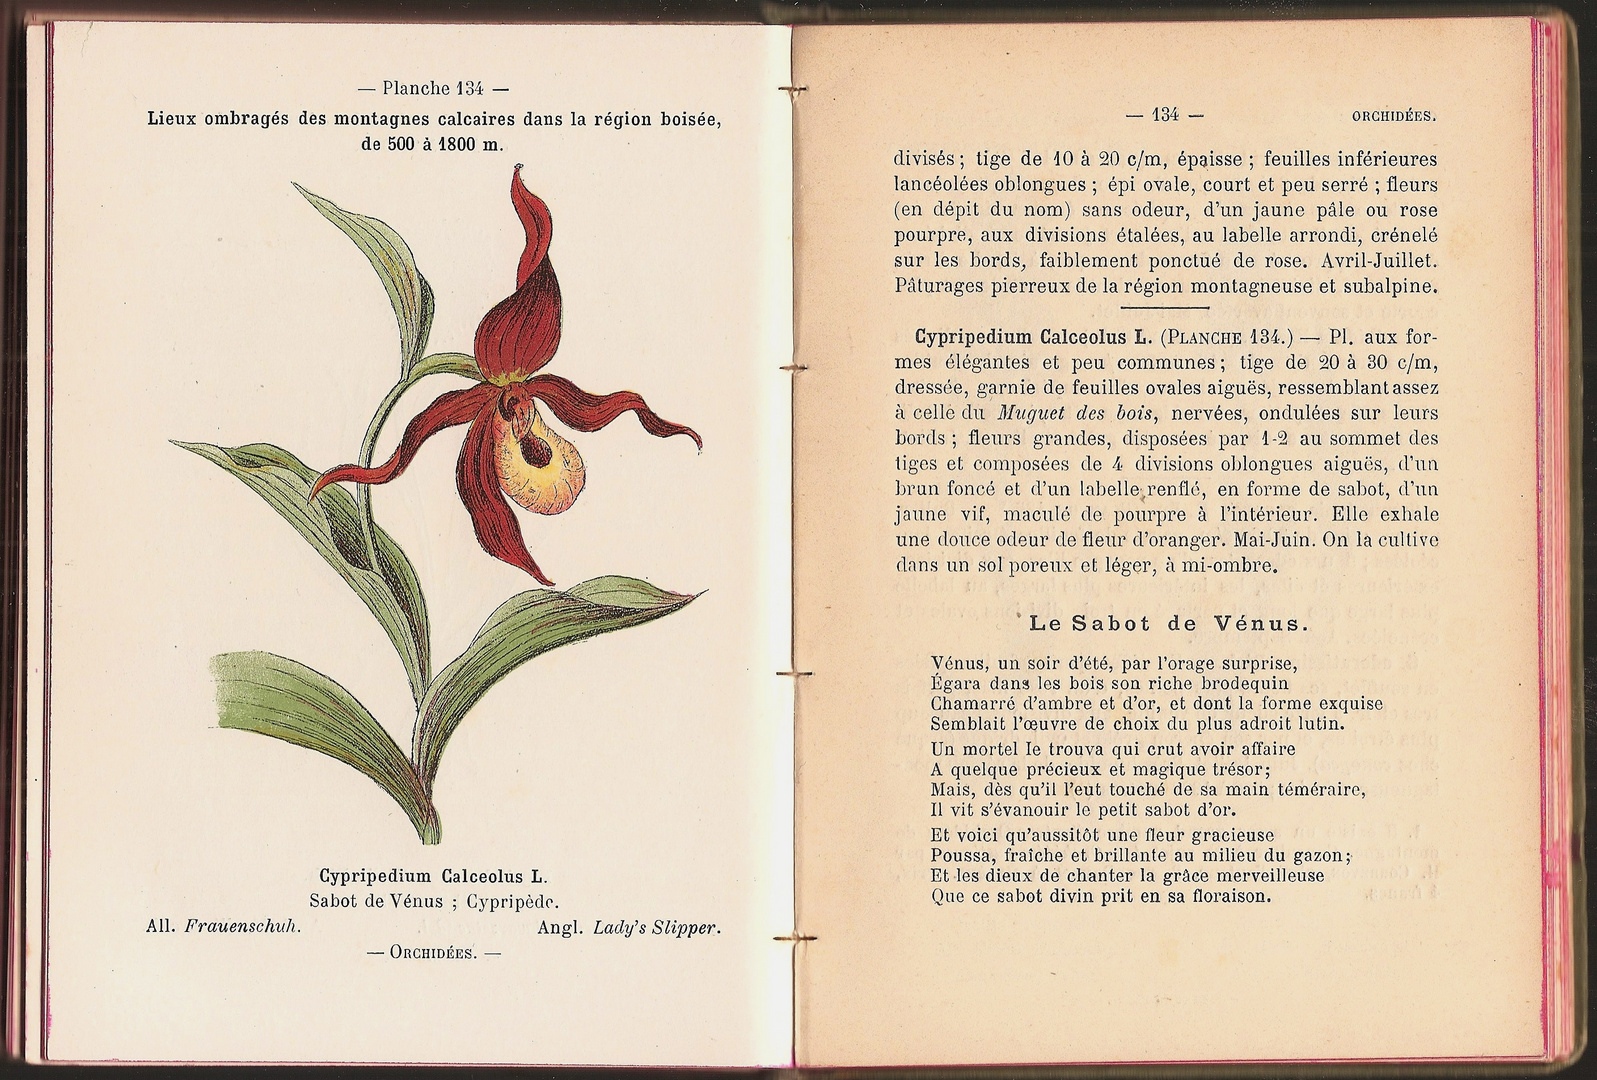 (2) Eine Doppelseite aus dem Taschenführer für Alpenpflanzen von H. Correvon, 1898